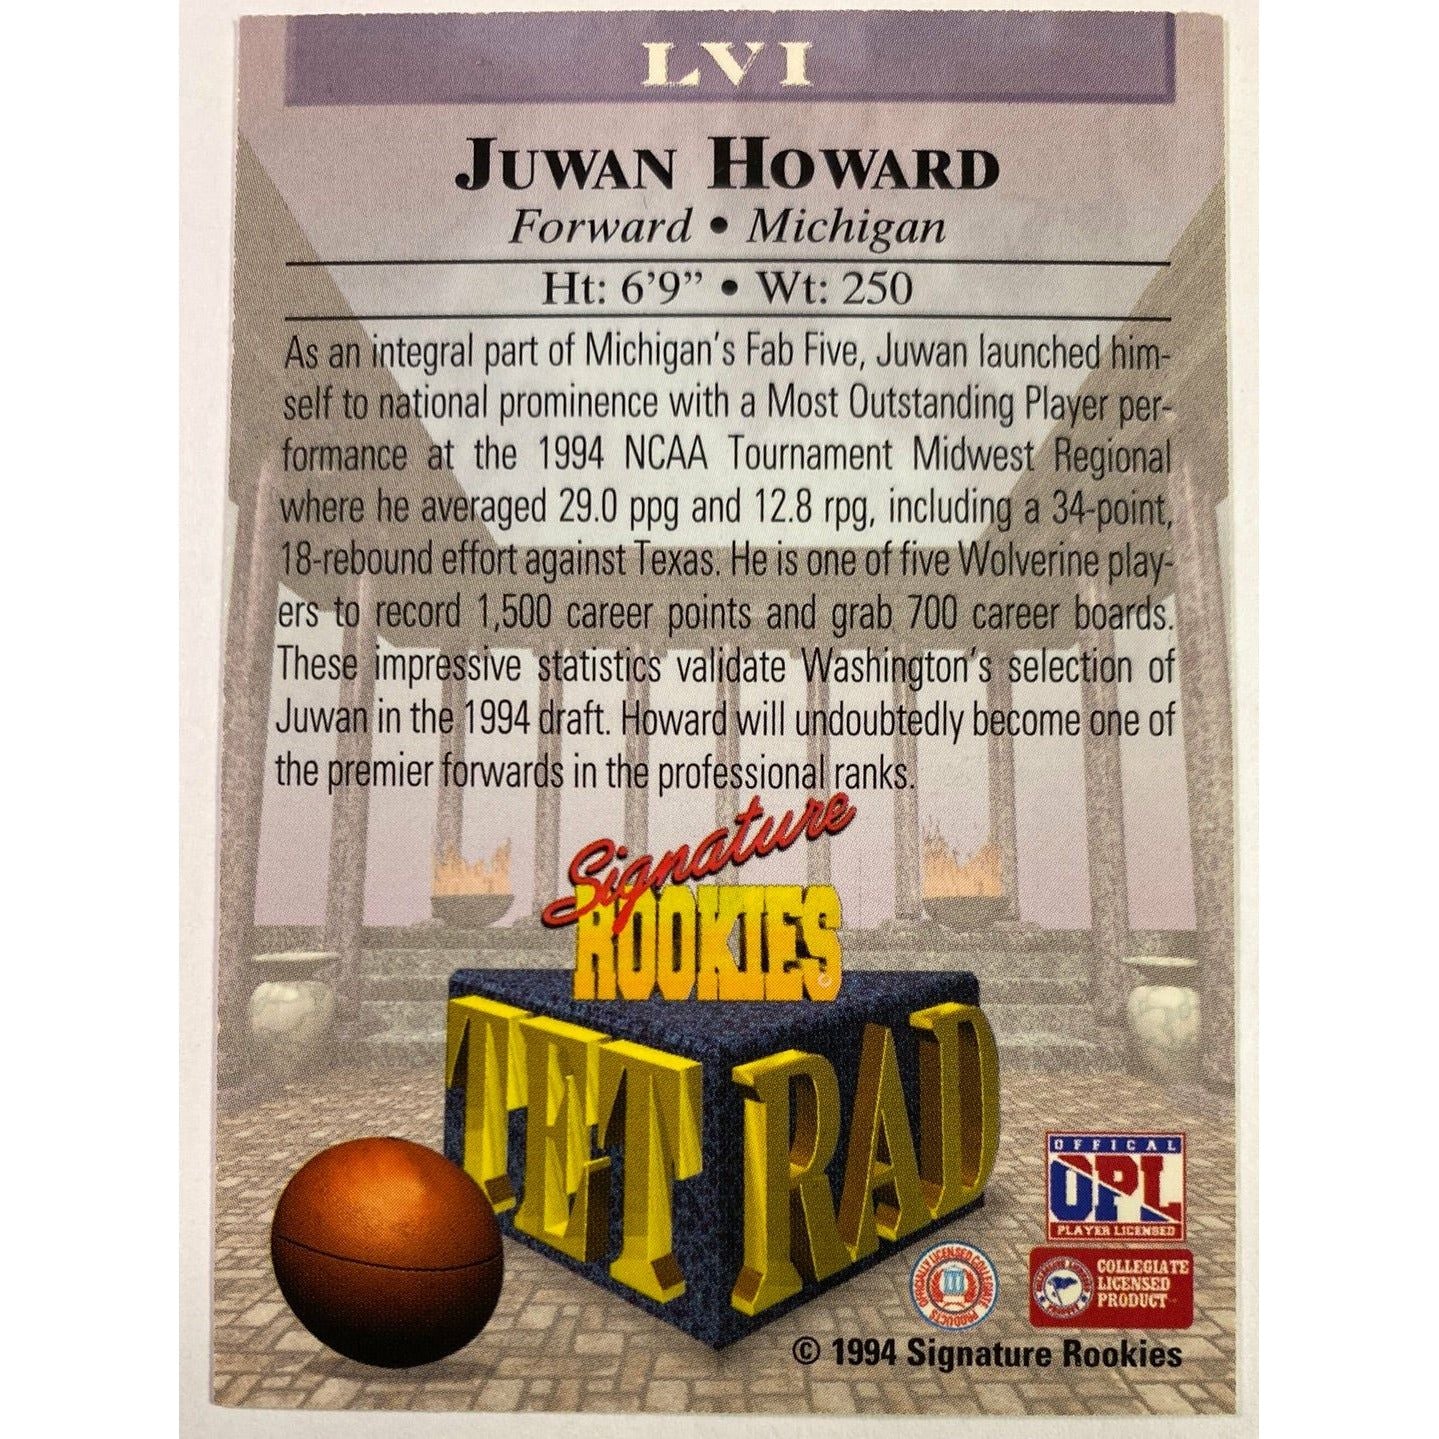 1994 Signature Rookies Juwan Howard TFT RAD 1/45000